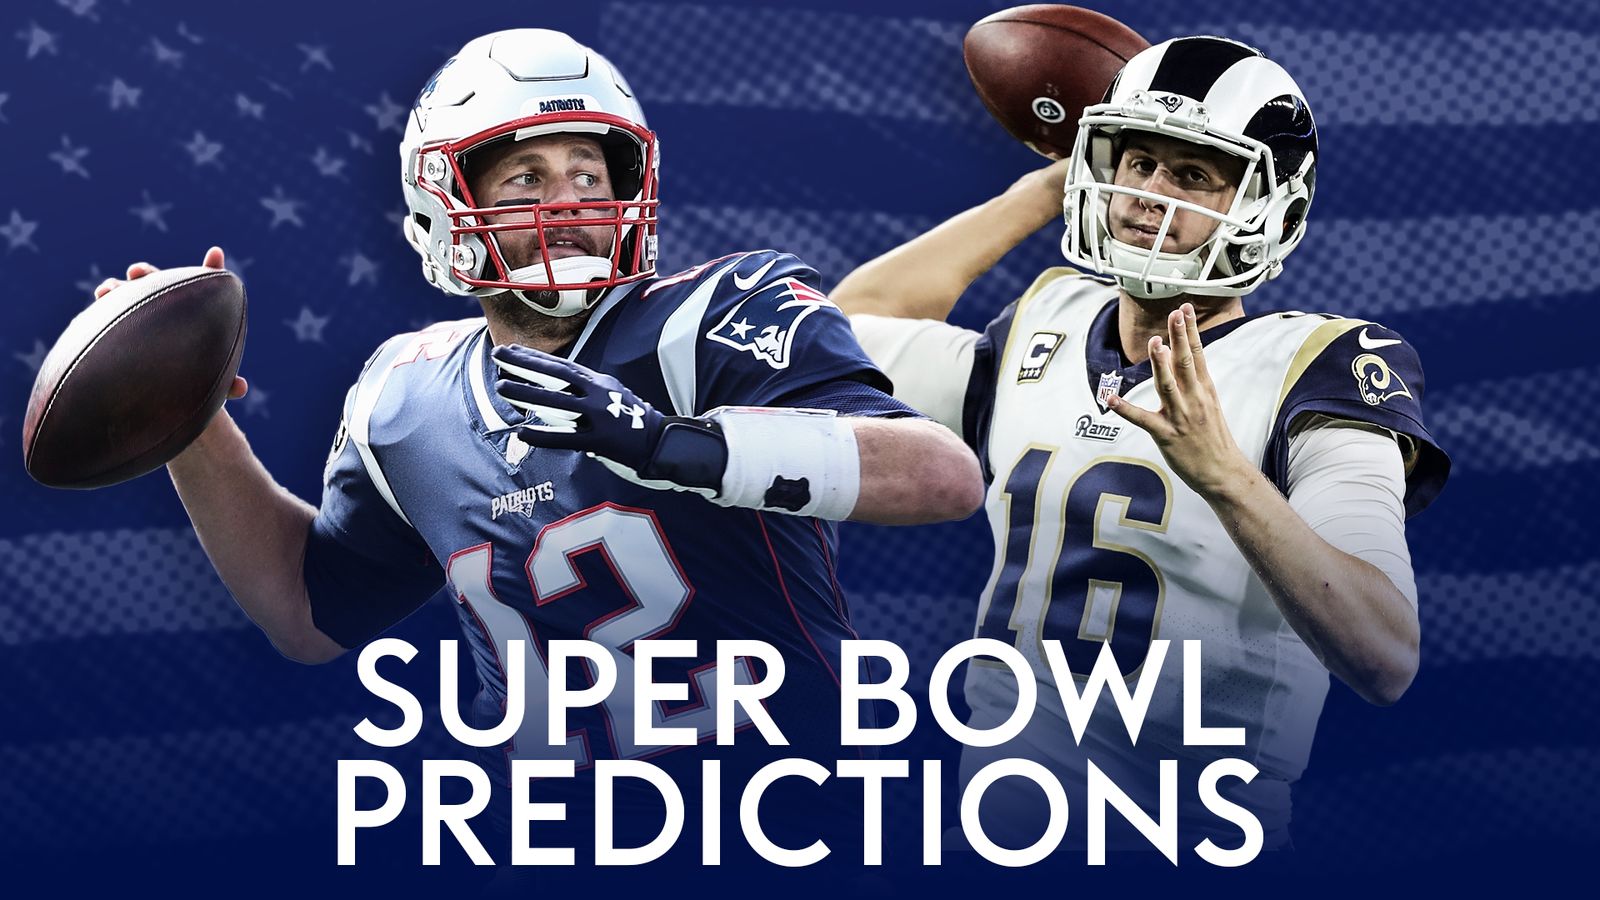 Super Bowl LIII Predictions: Sky Sports NFL presenters pick Patriots or Rams | NFL ...